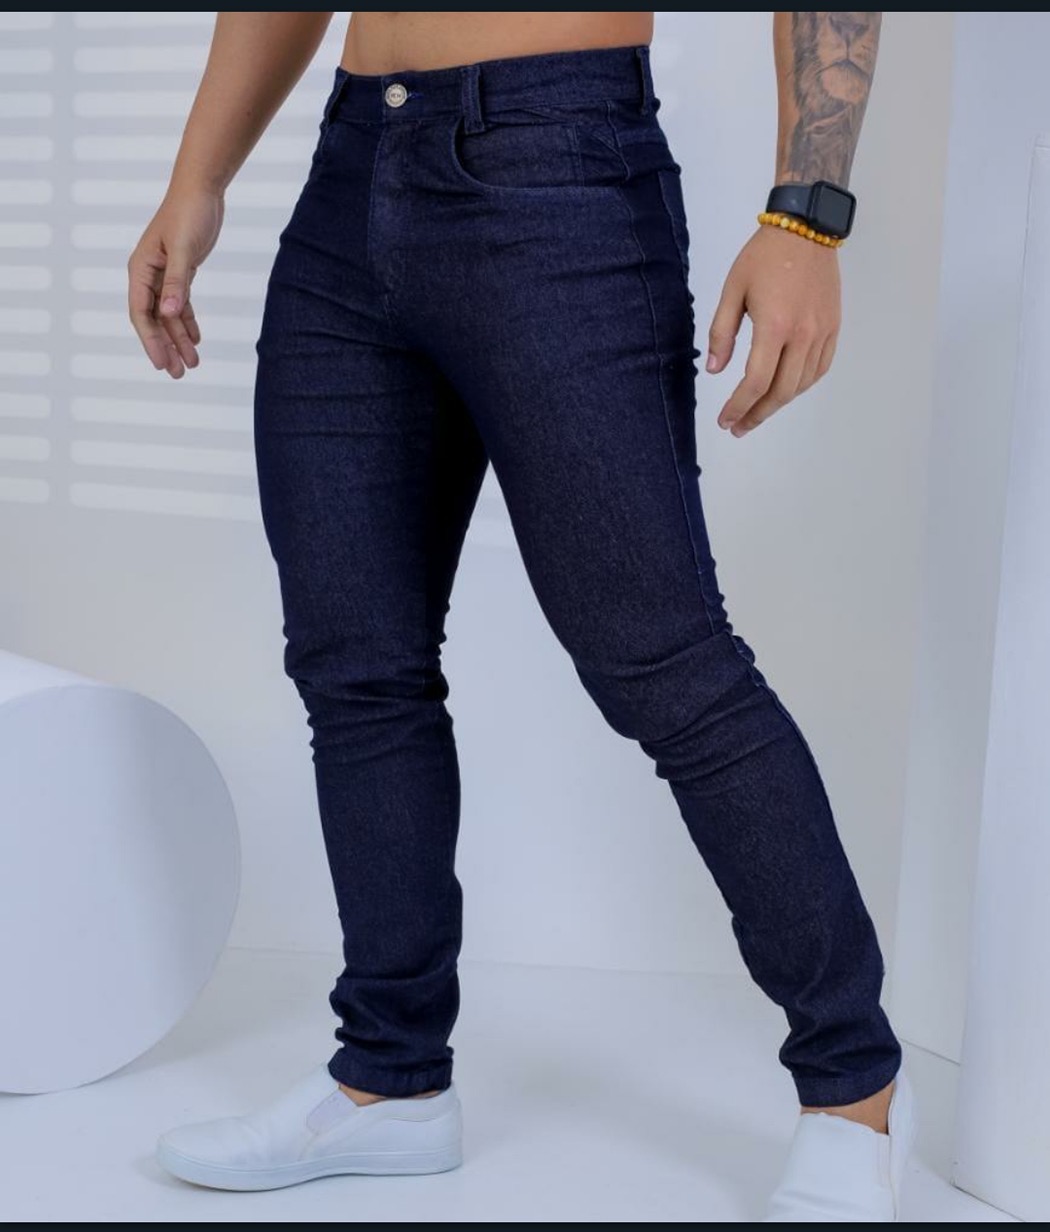 Calça jeans adulto